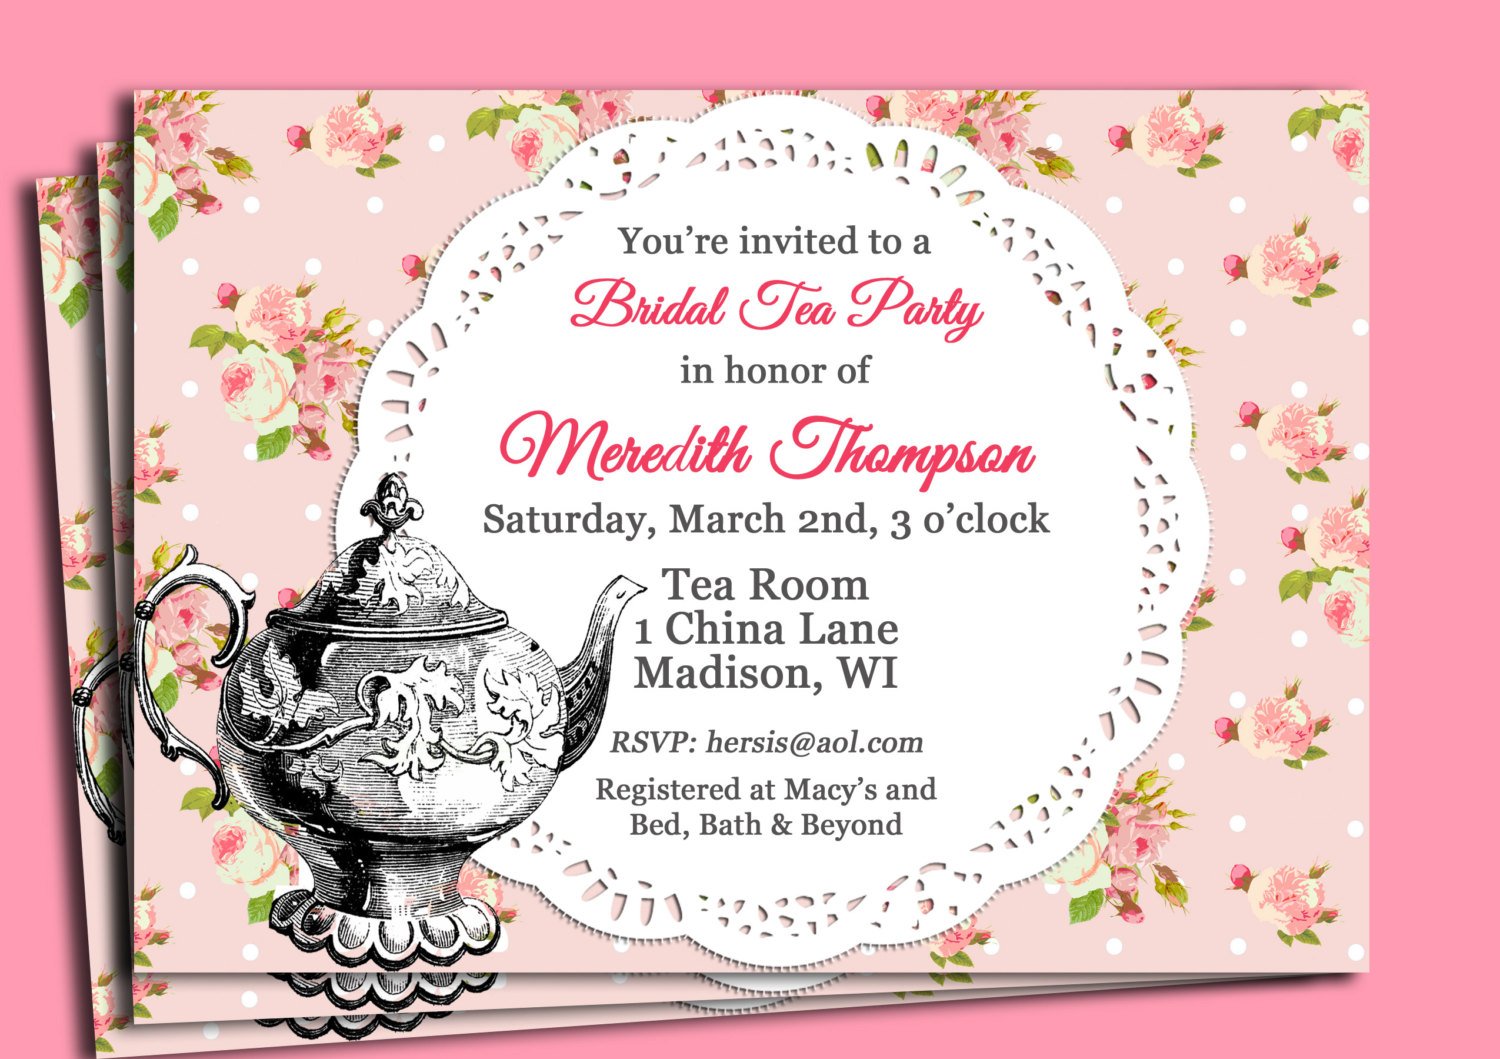 Invite приглашение. Приглашение на чайную вечеринку. Приглашение на чаепитие. Tea Party приглашение. Приглашение на чайную церемонию.